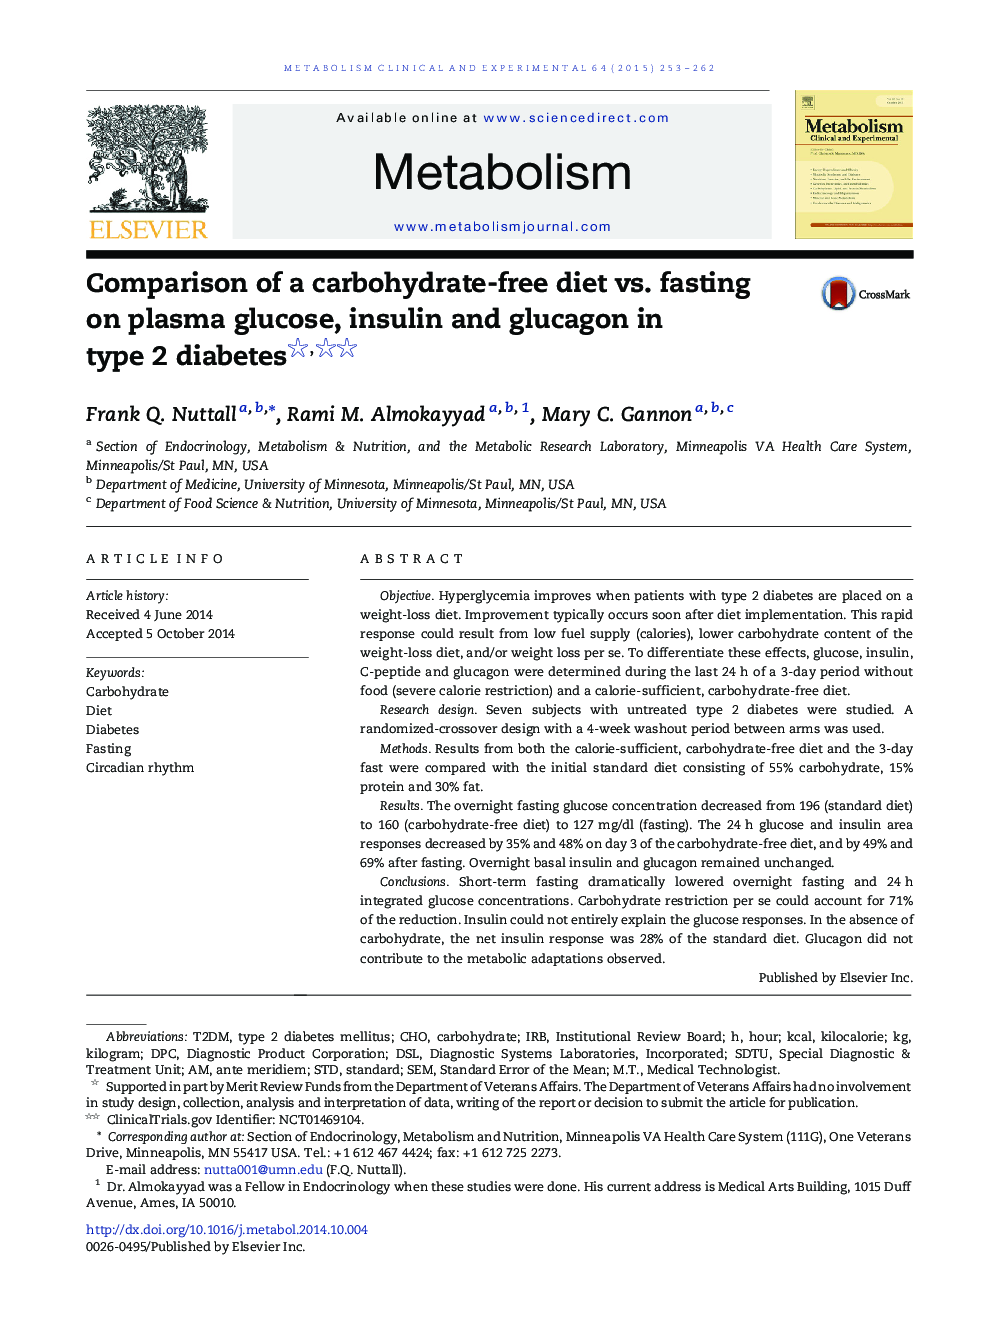 مقایسه ی یک رژیم غذایی بدون کربوهیدرات در مقایسه با روزه دار در گلوکز، انسولین و گلوکاگون در دیابت نوع 2 